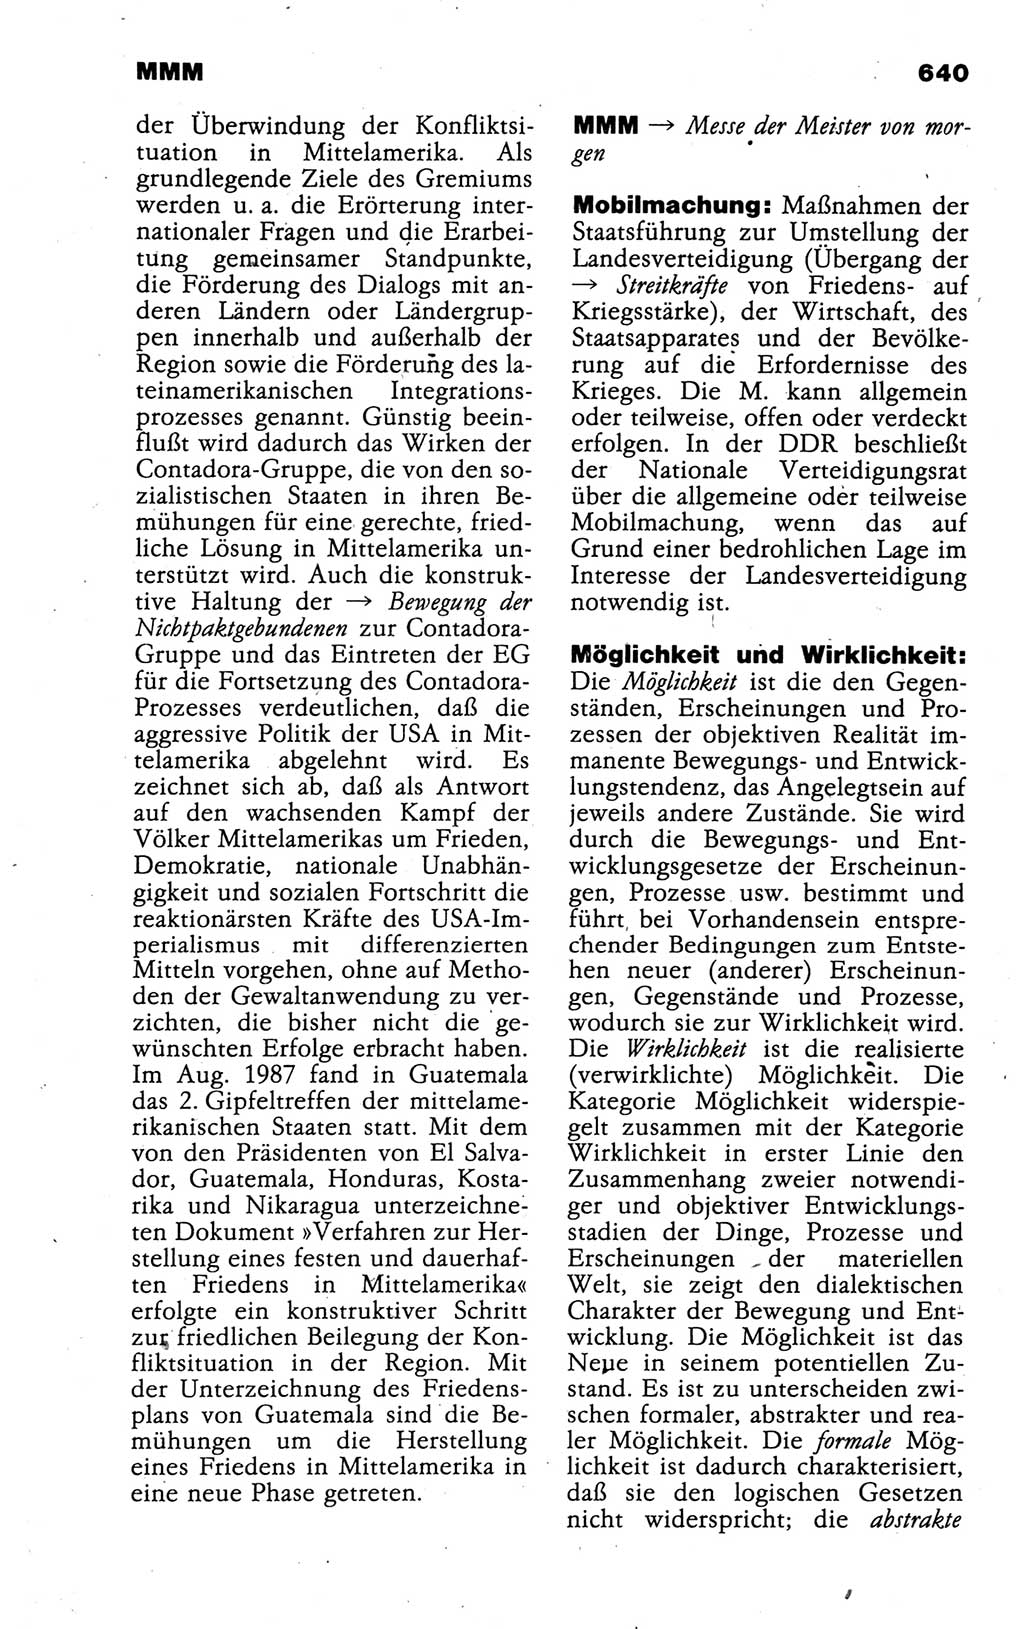 Kleines politisches Wörterbuch [Deutsche Demokratische Republik (DDR)] 1988, Seite 640 (Kl. pol. Wb. DDR 1988, S. 640)